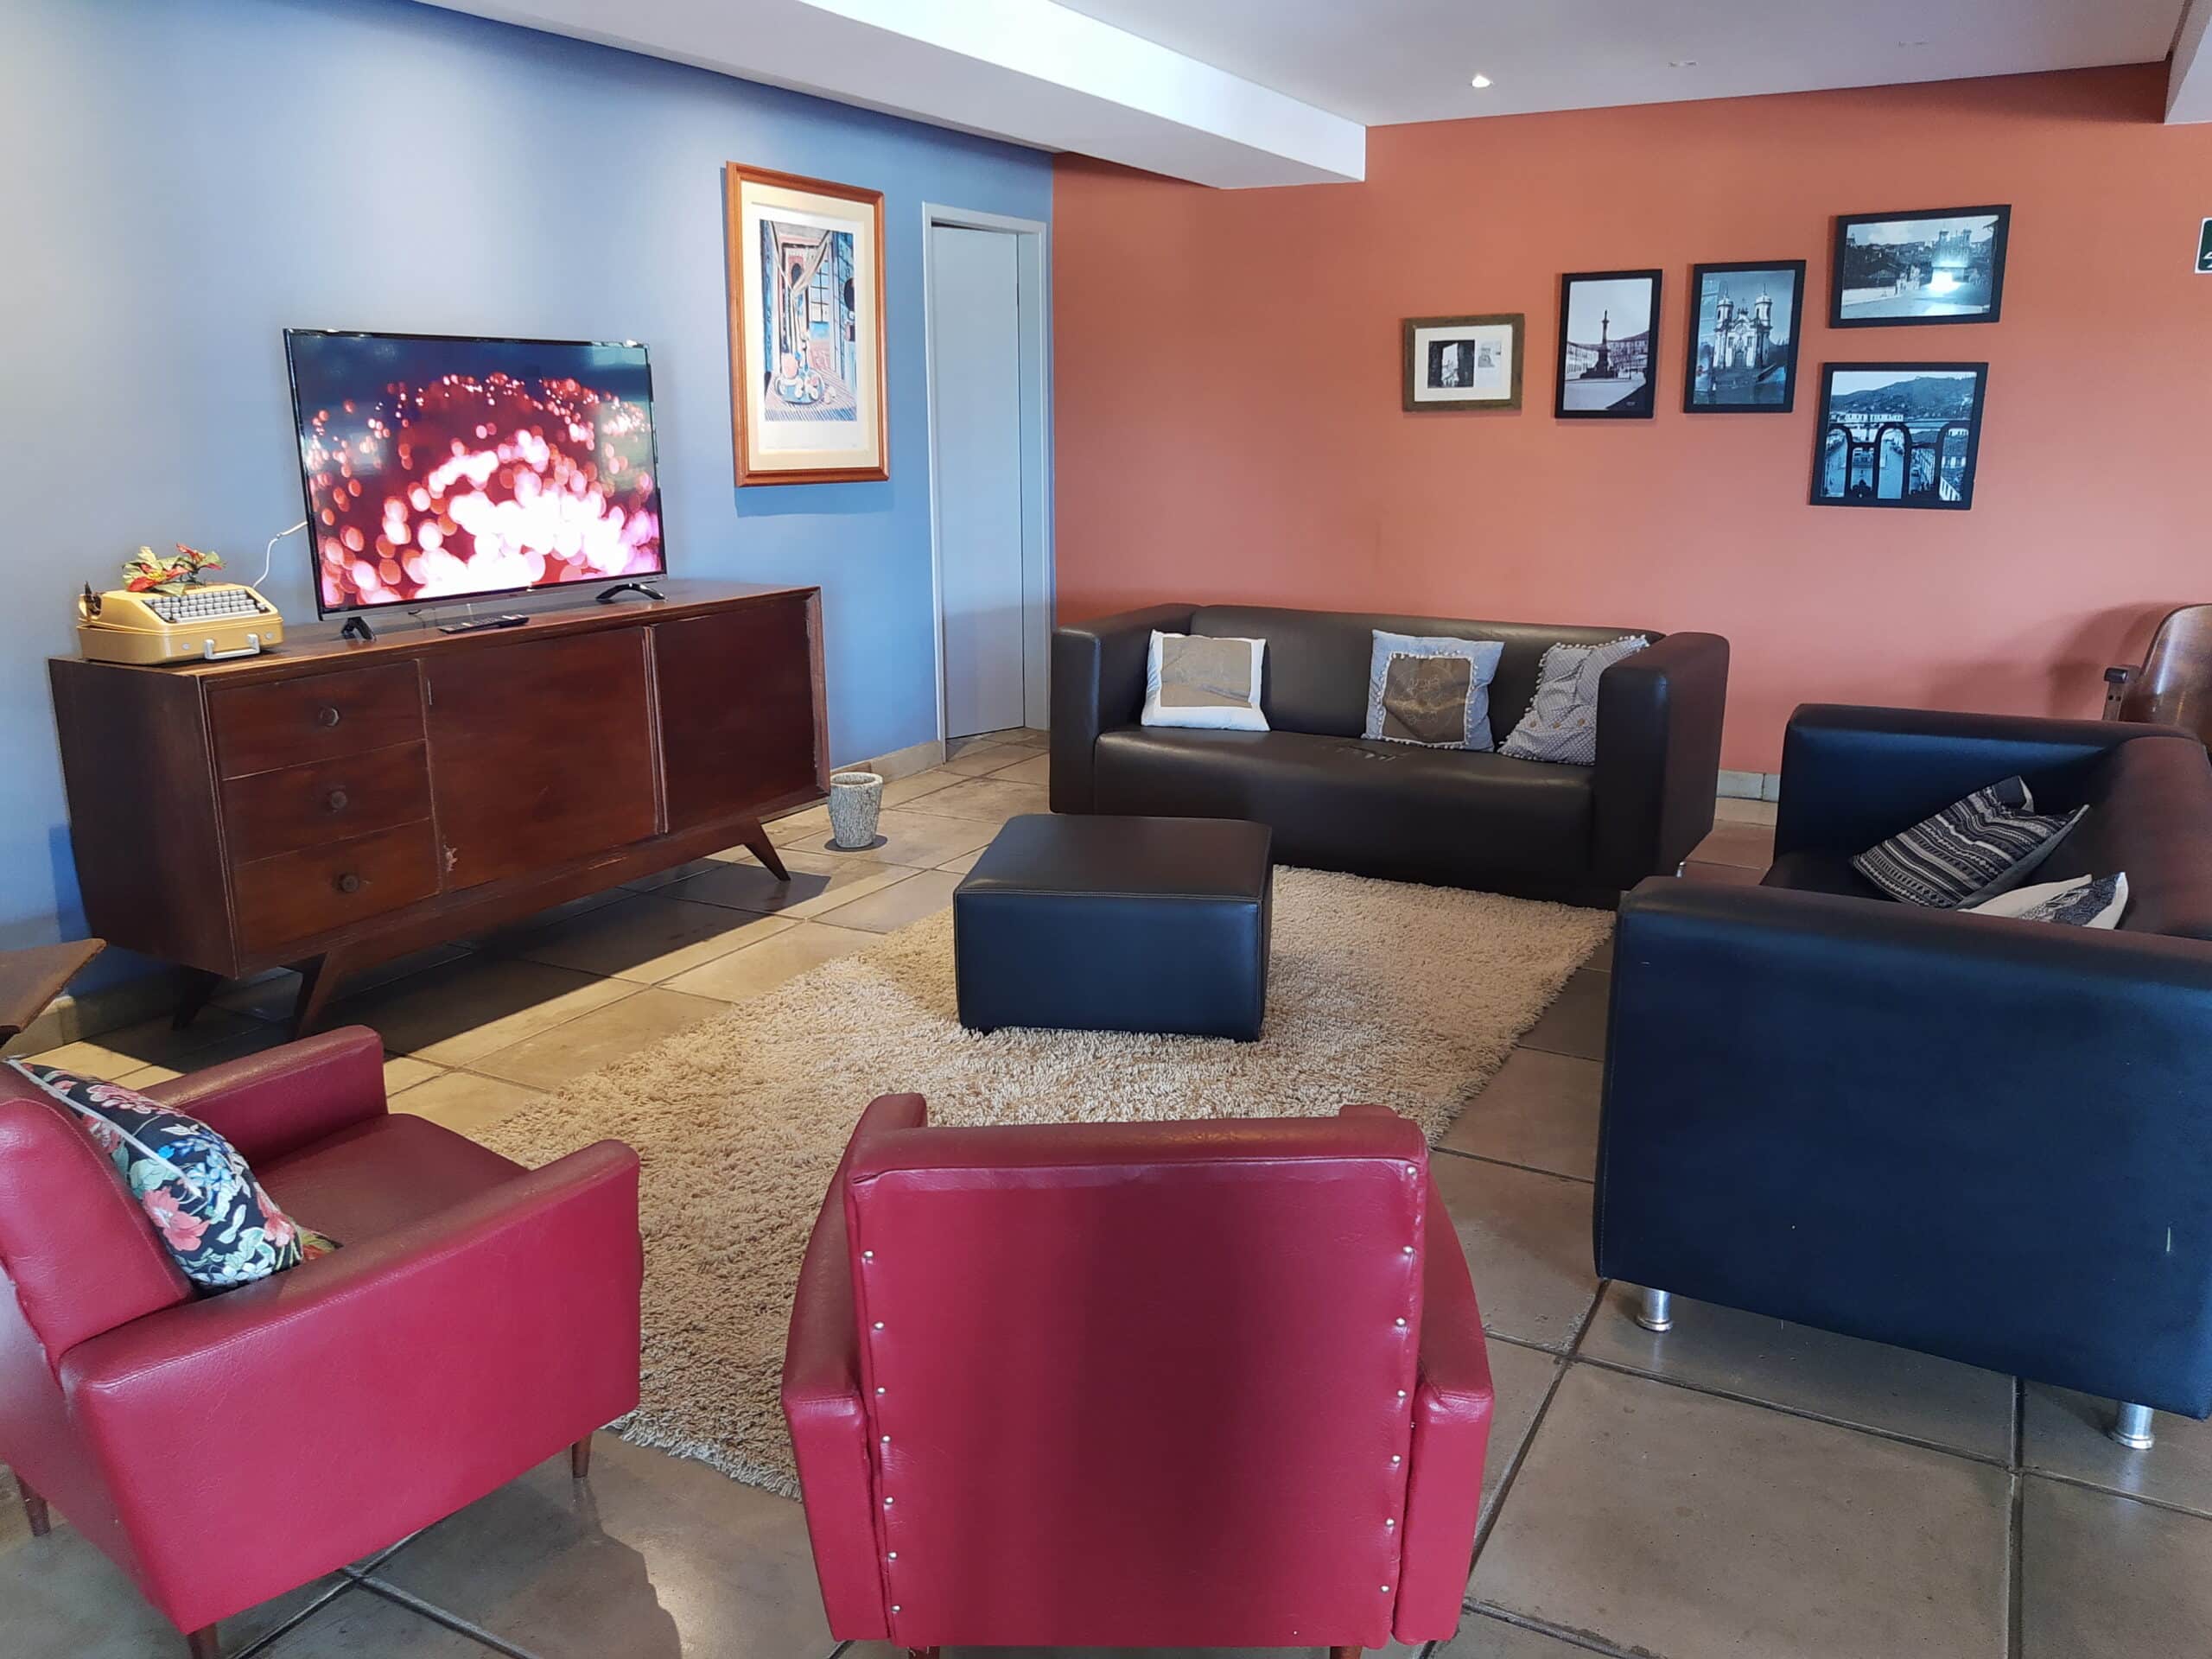 lounge compartilhado da pousada dos ofícios com sofás, poltronas e um hack com TV de tela plana tocando música